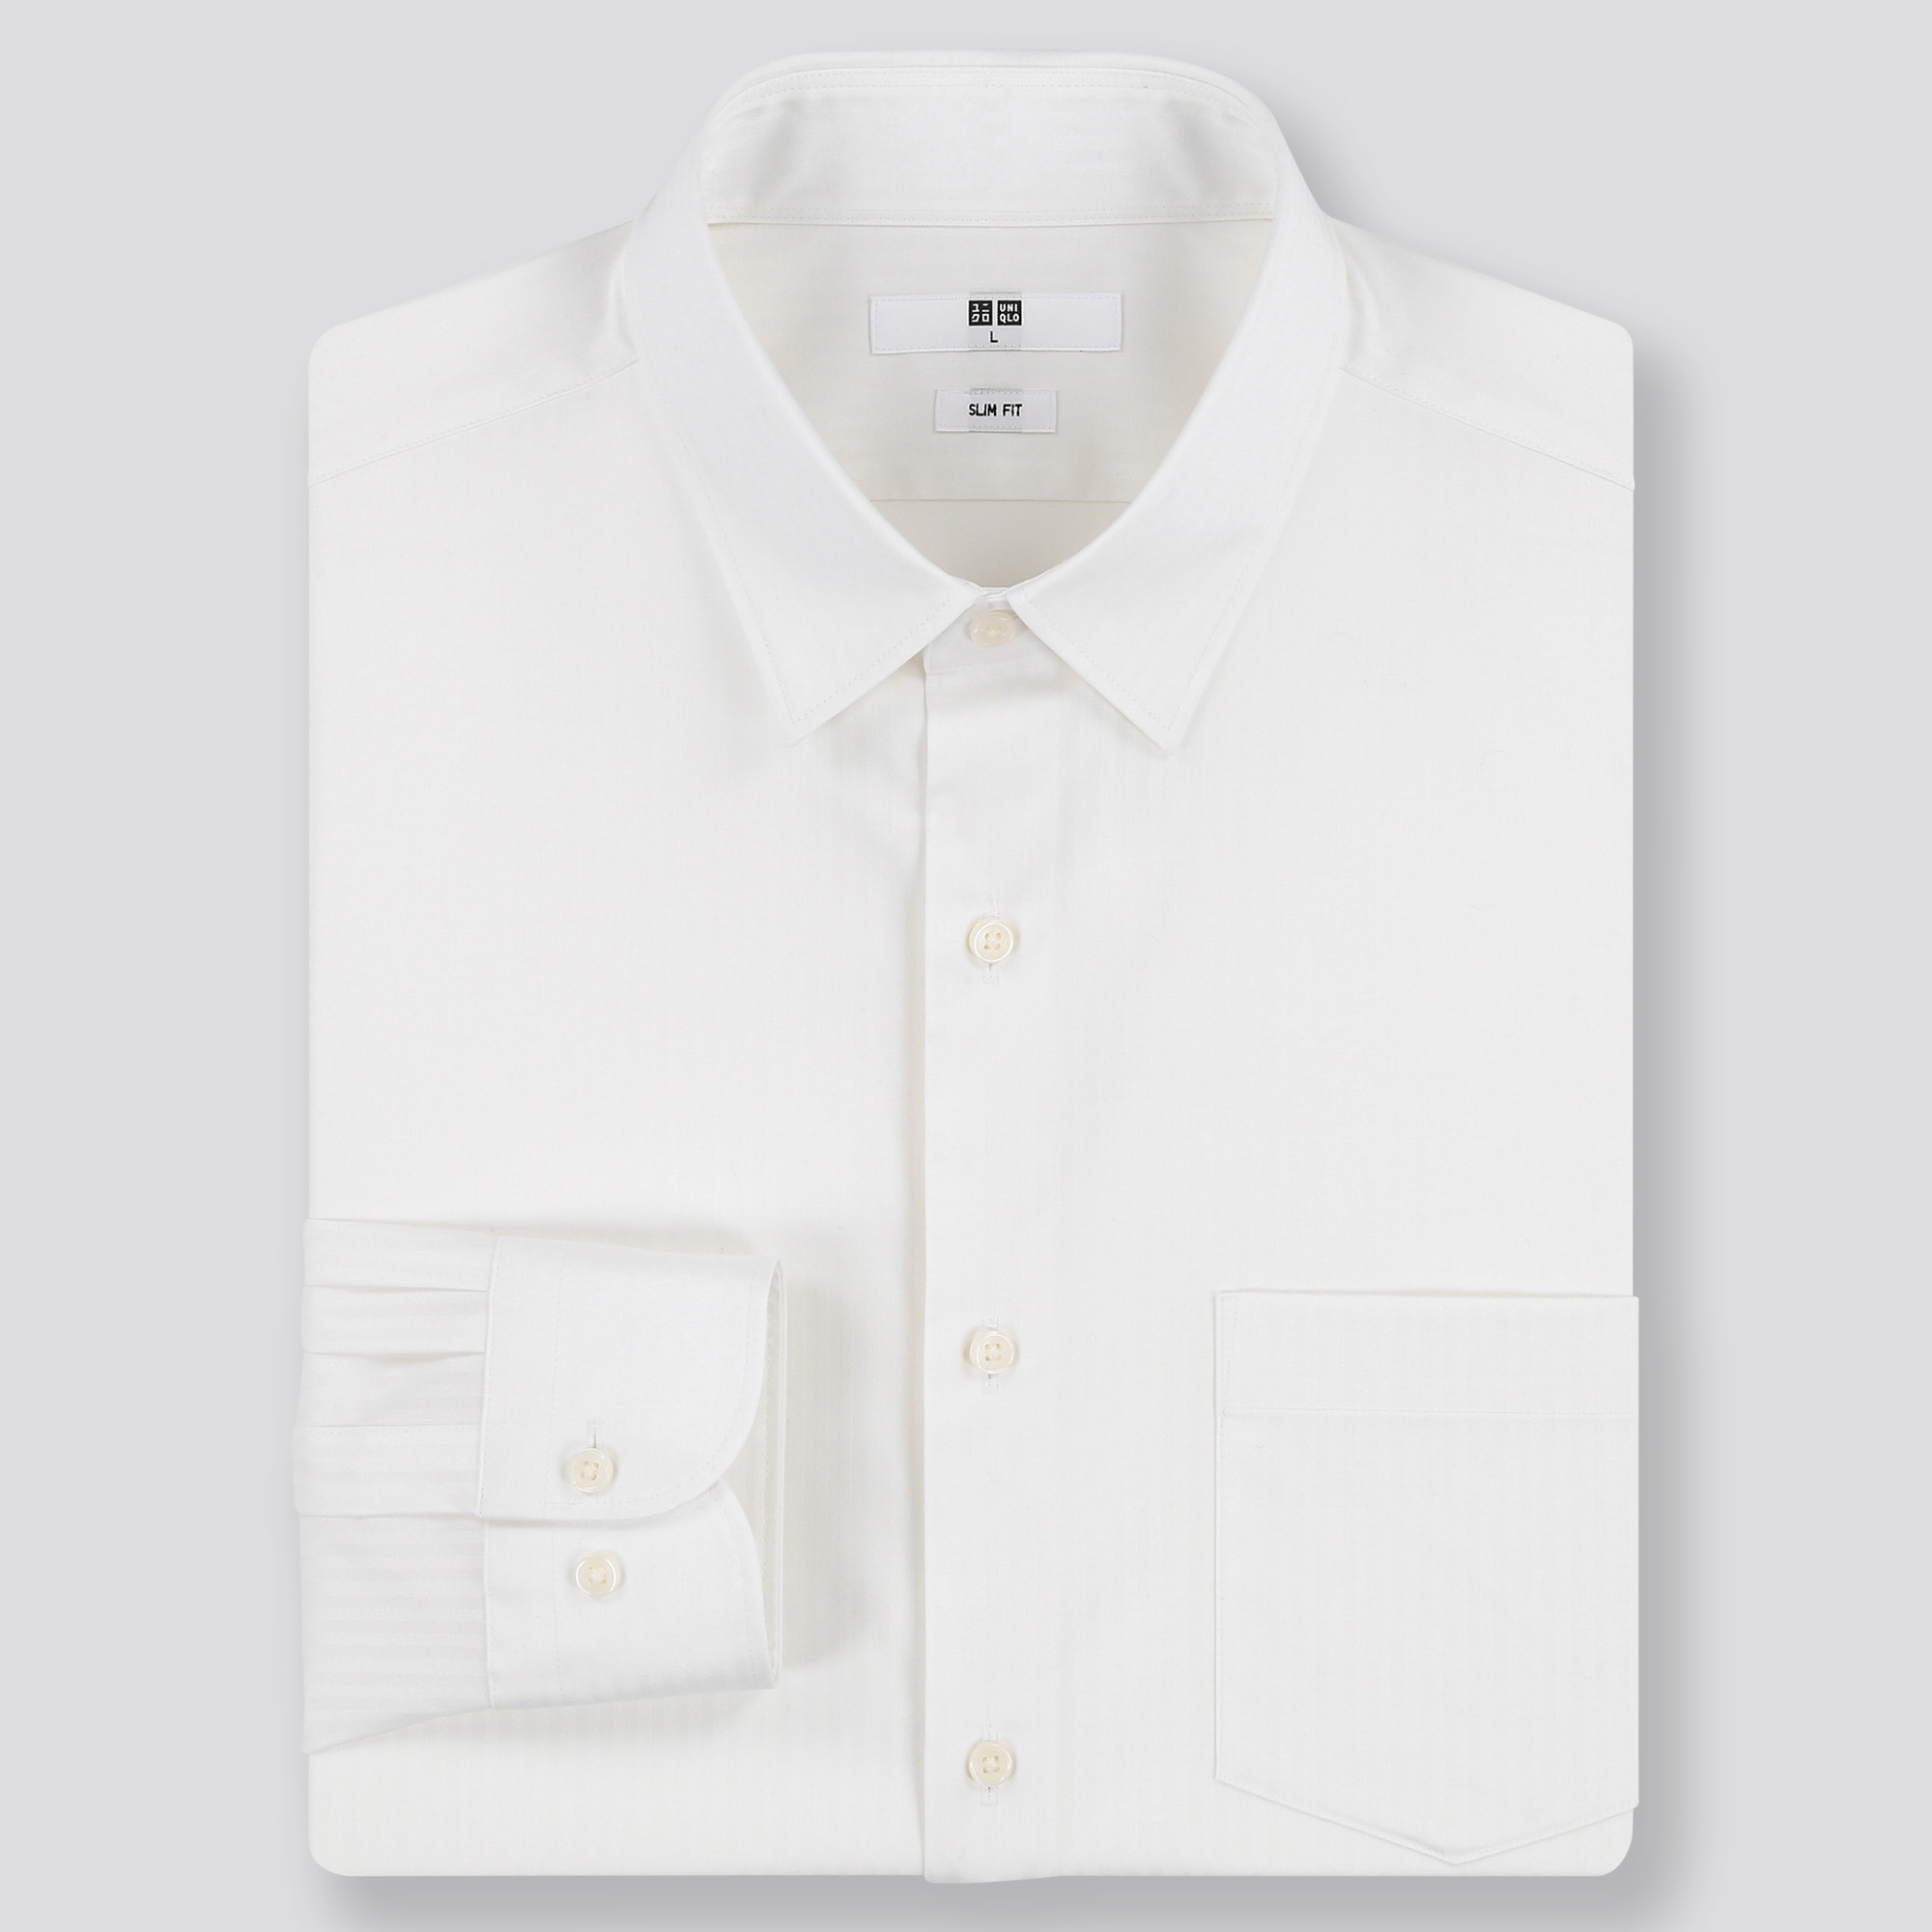 ワイシャツ ビジネス 半袖の関連商品 ユニクロ